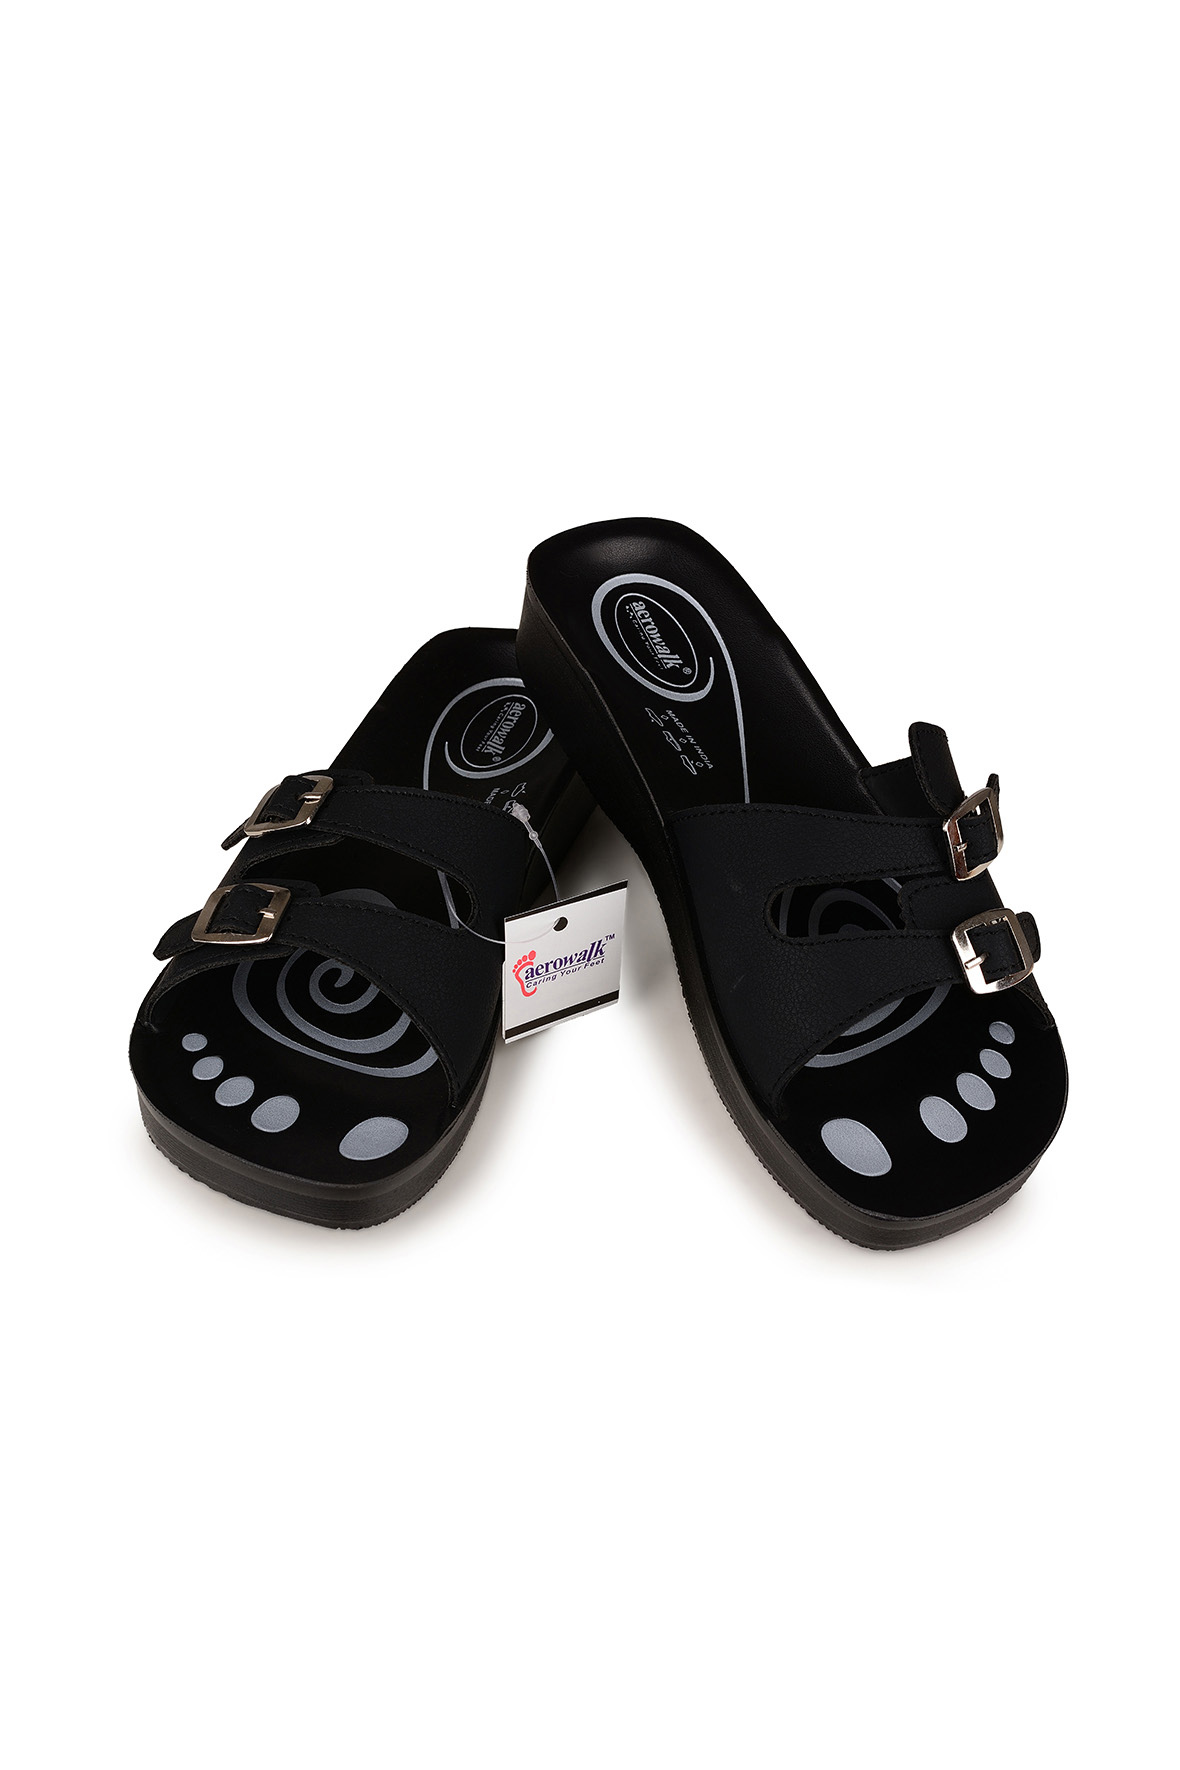 Læge kæmpe Bekræfte Aerowalk åben sandal i sort til piger - stik i sandal dobbelt rem - Hos  Lohse